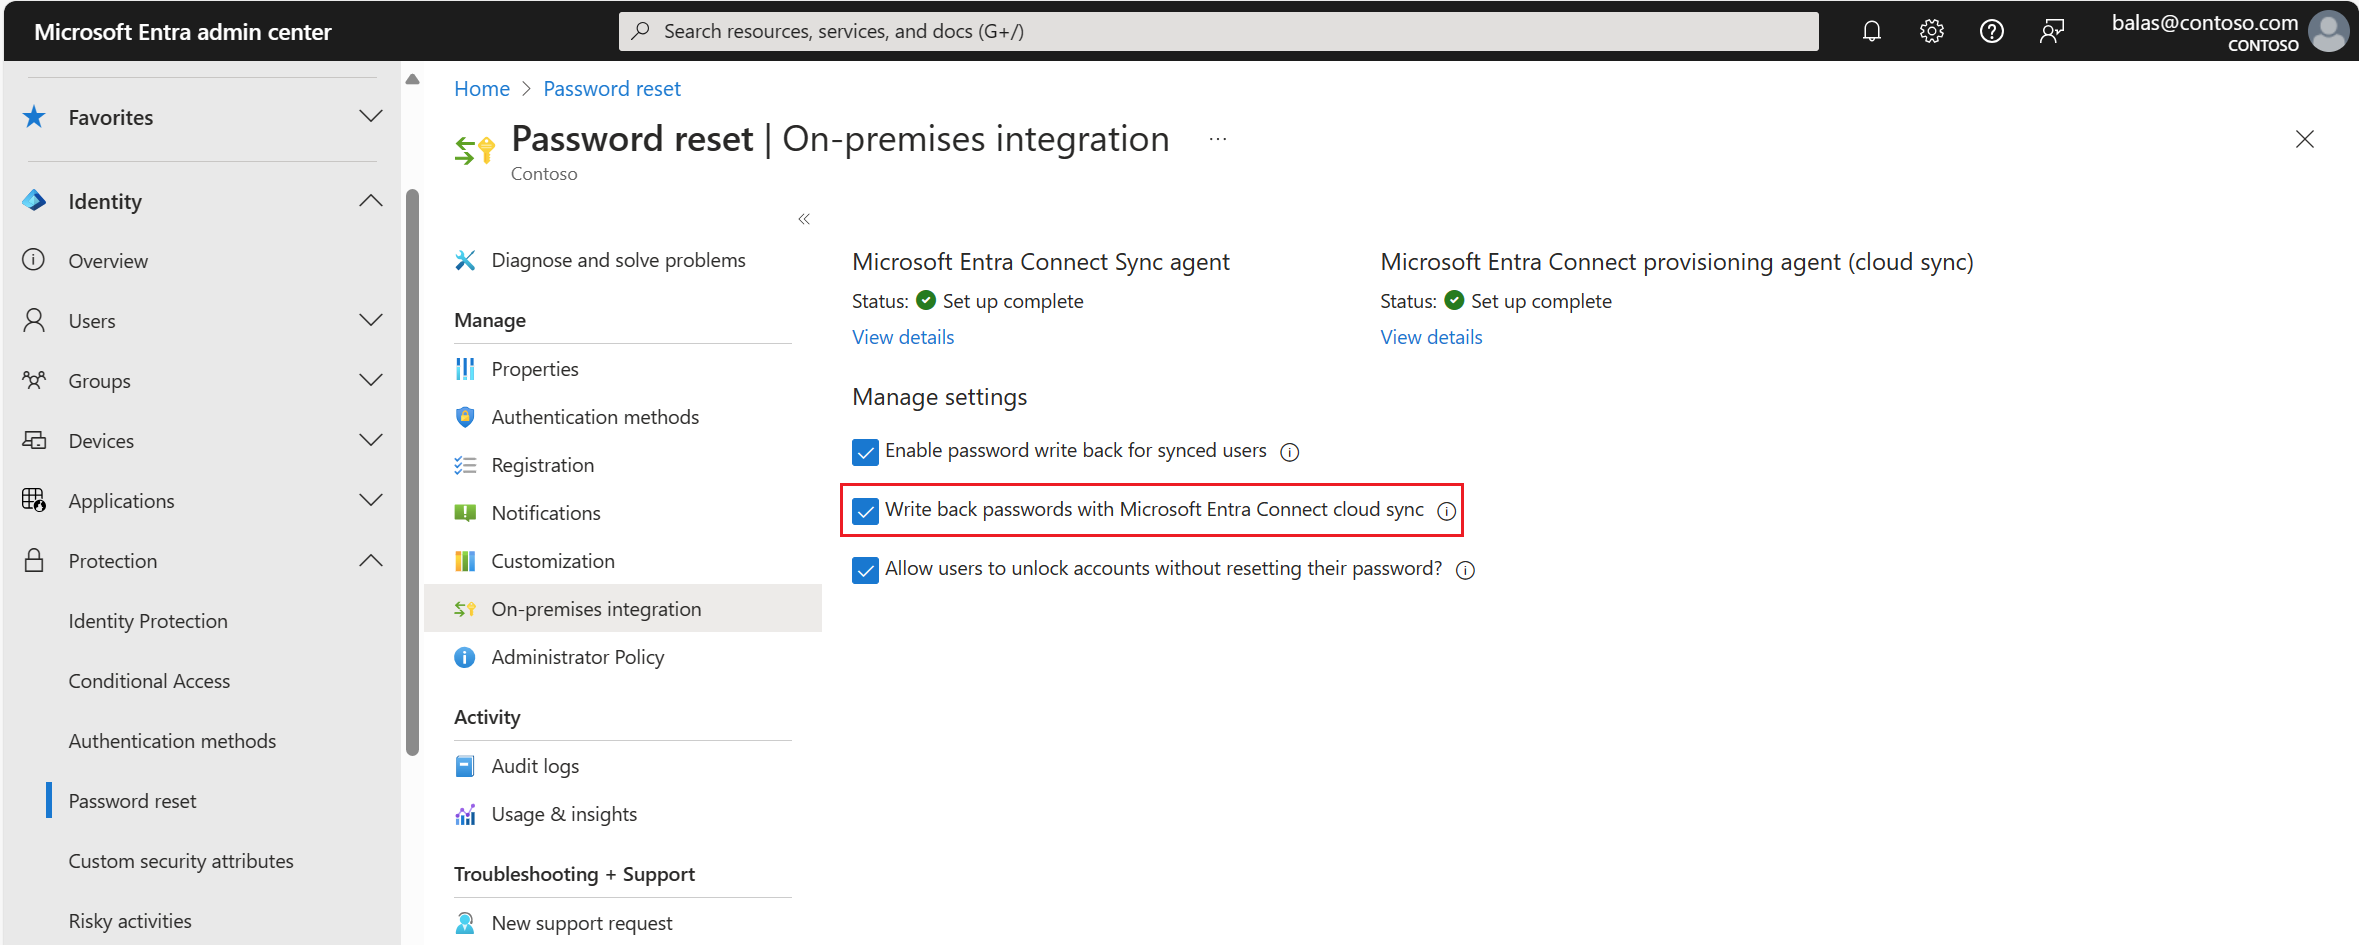 Captura de pantalla de la escritura diferida de contraseñas habilitada para Microsoft Entra ID en una integración local.